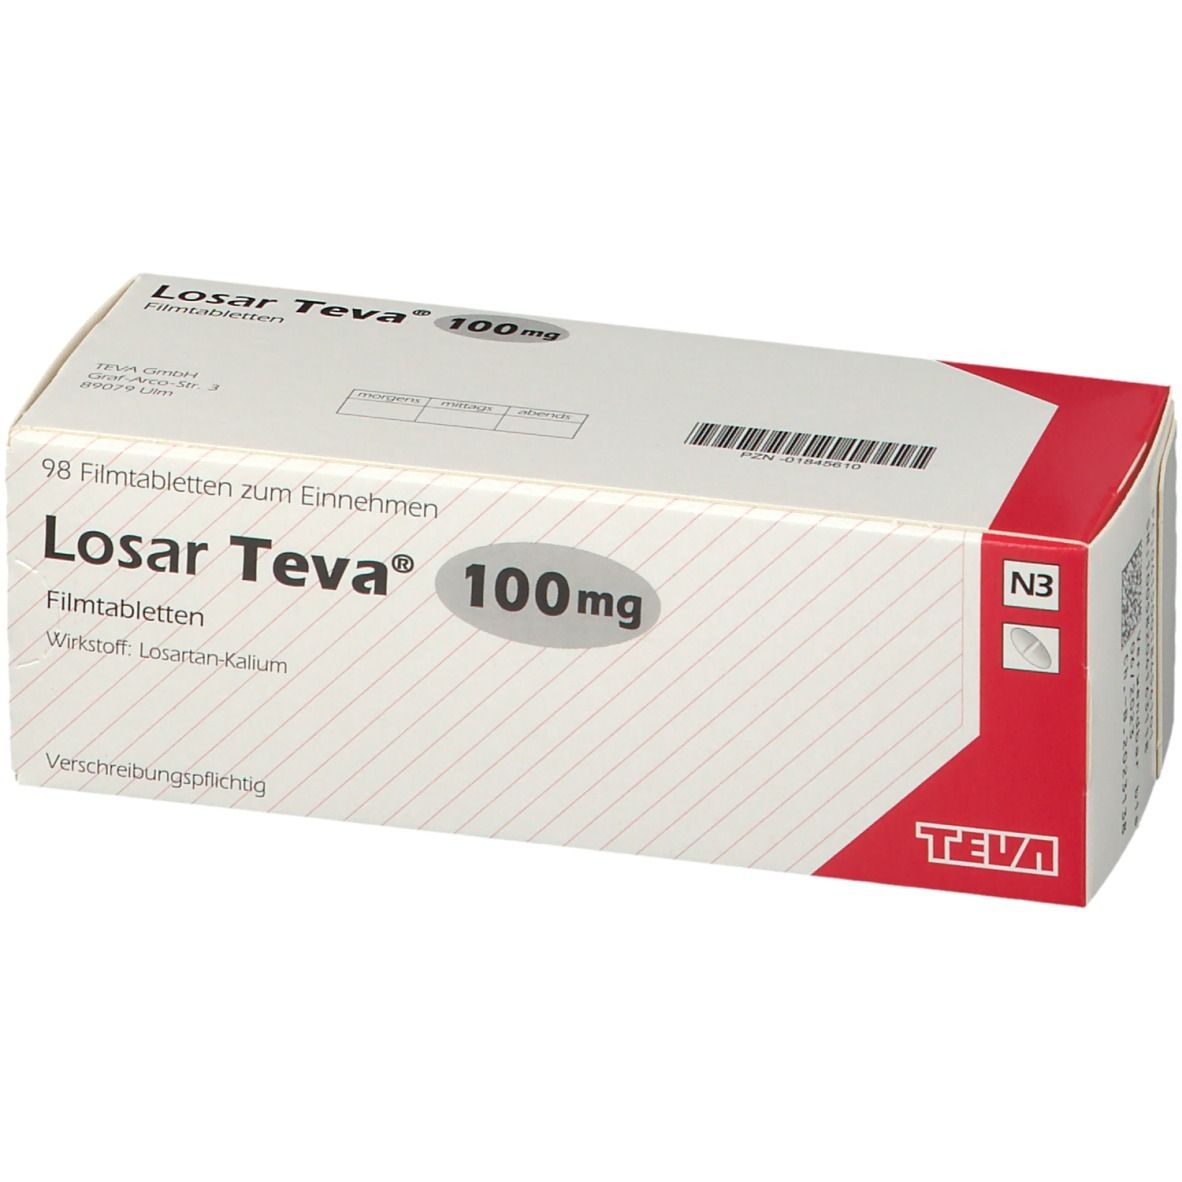 Losar Teva® 100 mg 98 - shop-apotheke.com